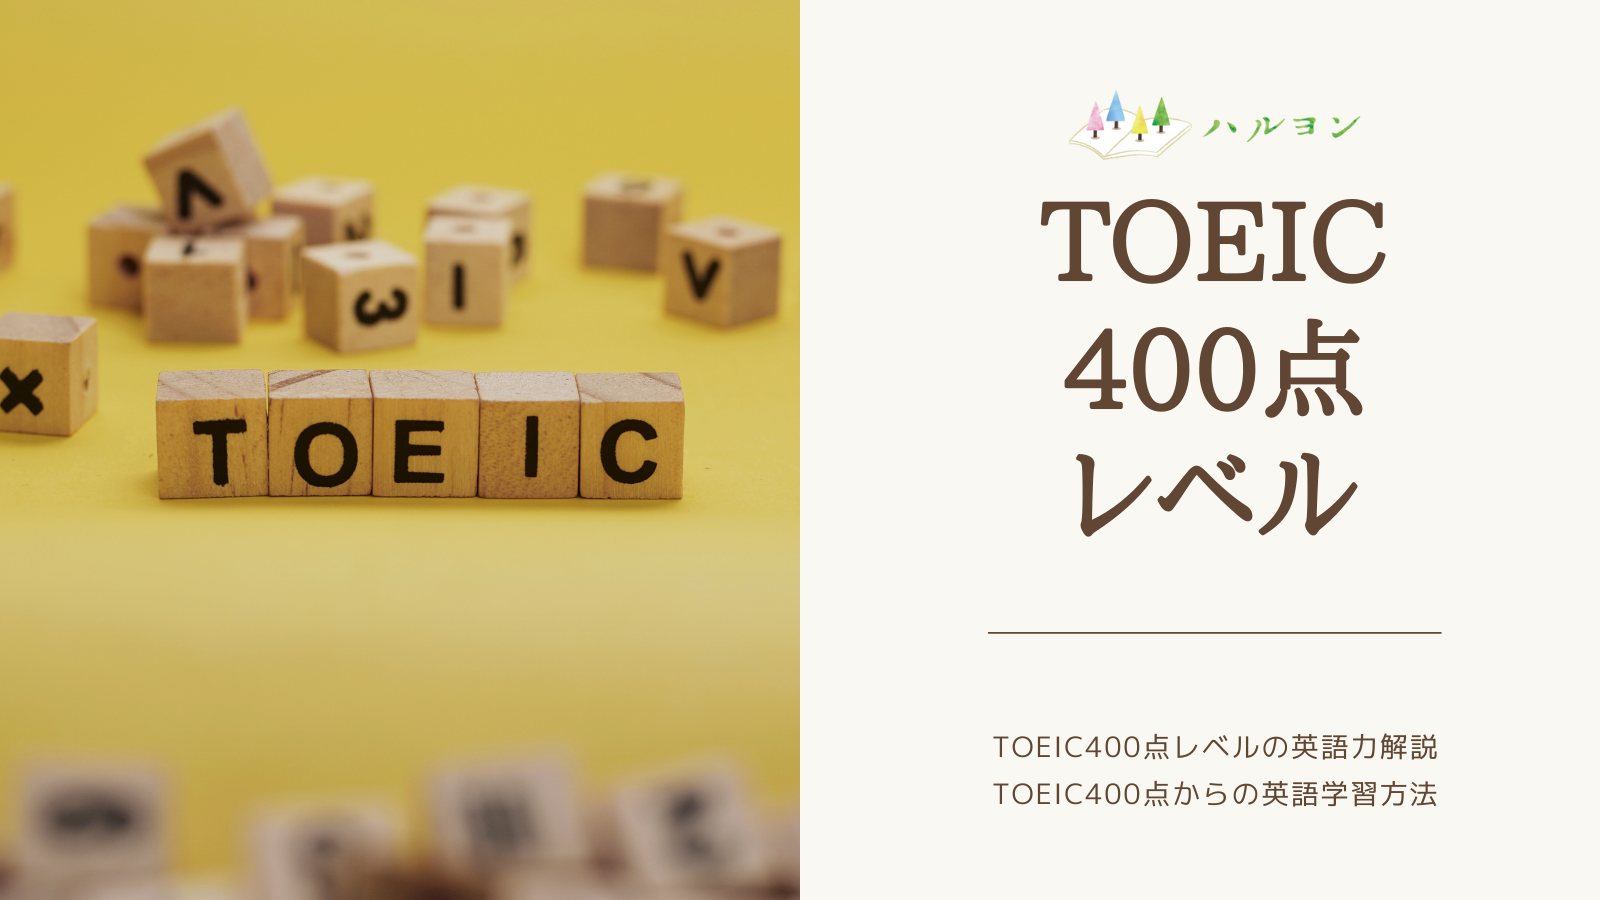 ハルヨン式 Toeic400点レベルの英語力解説 Toeic400点からの英語学習方法 ハルヨン